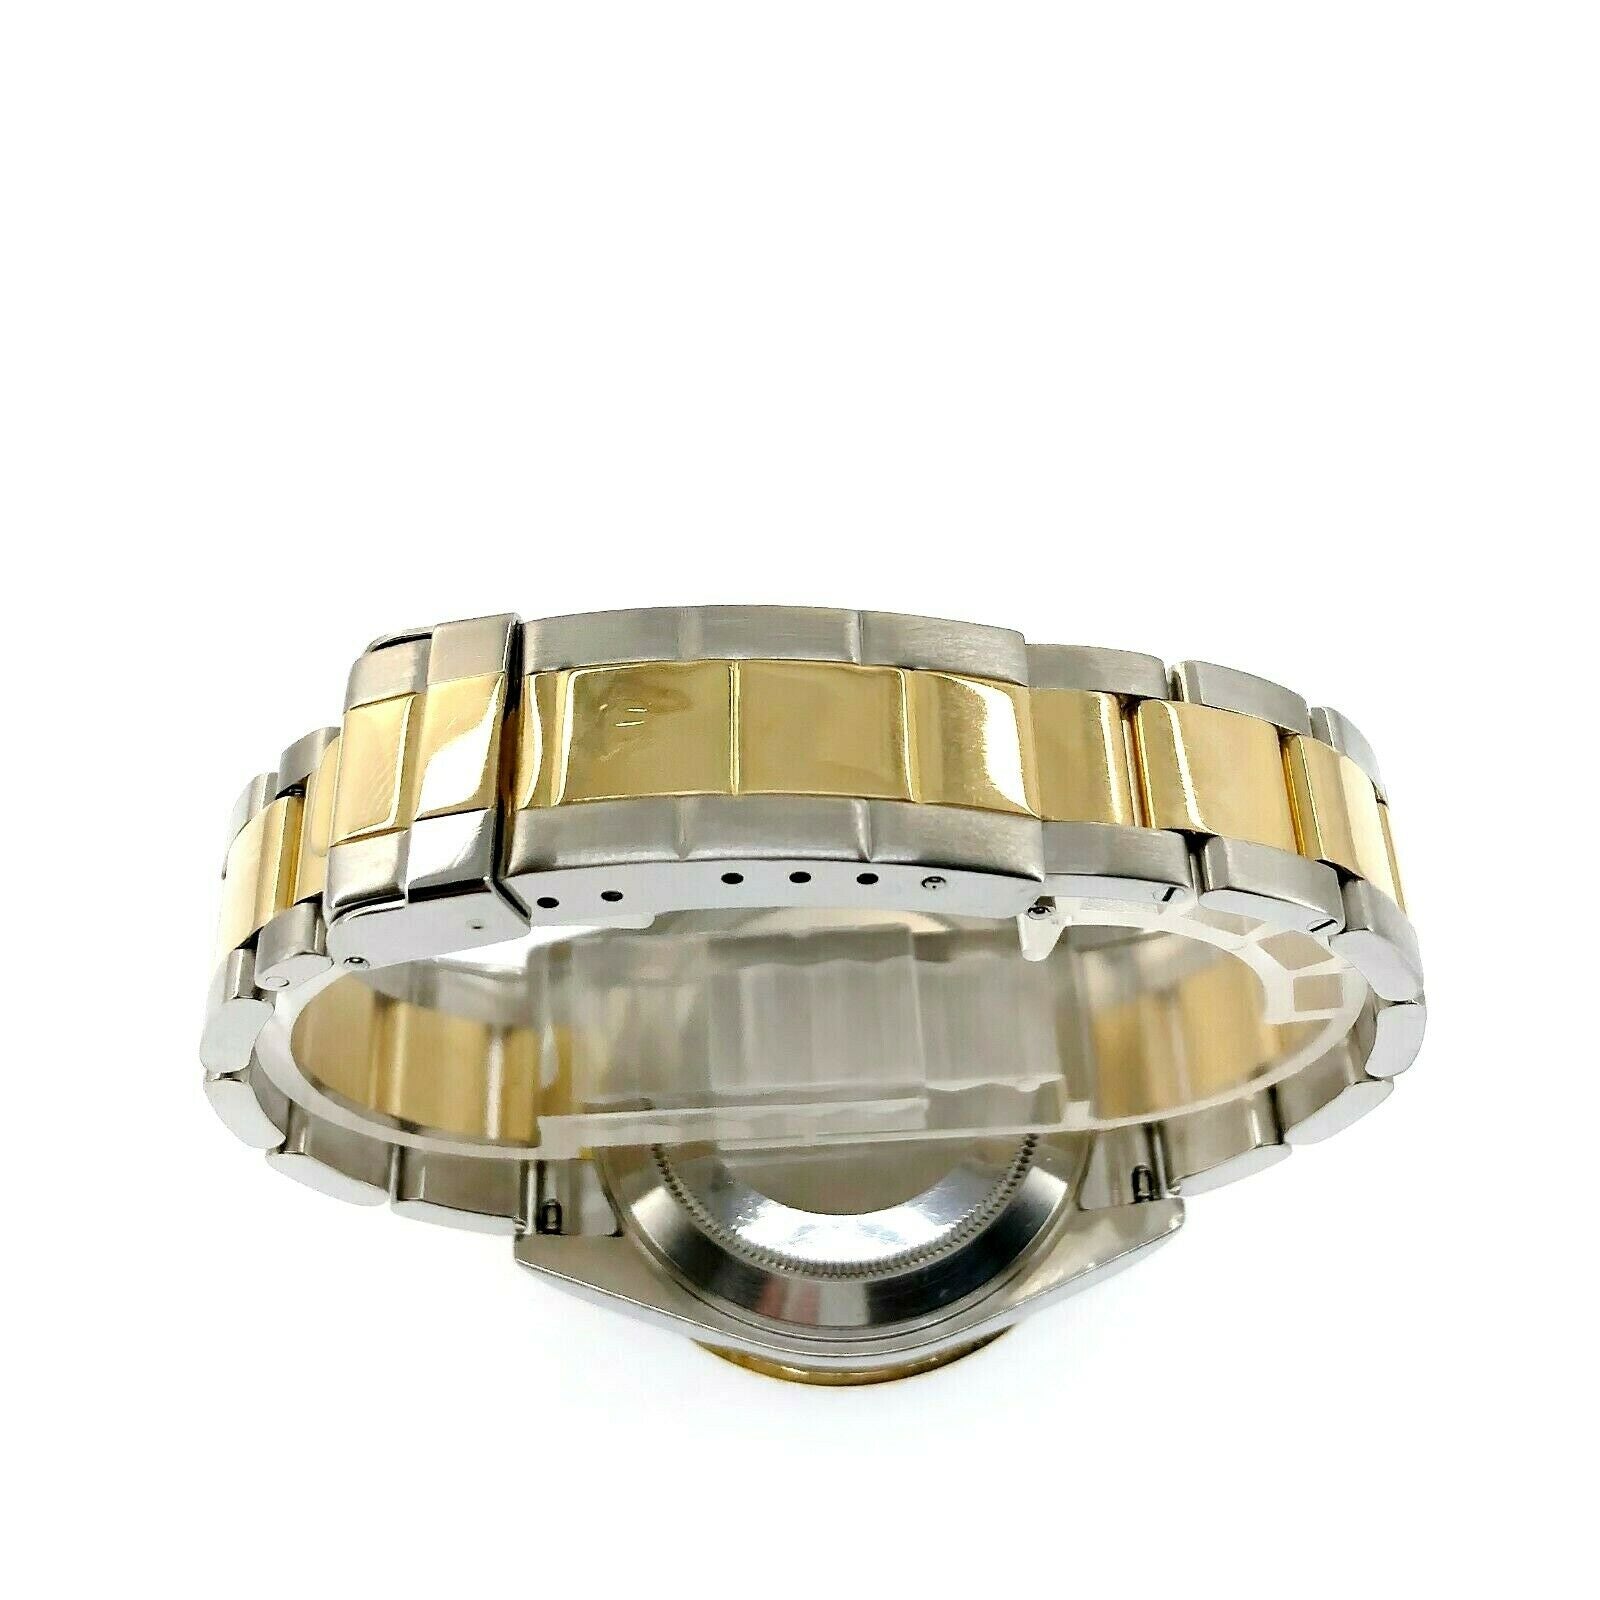 Rolex Blue Submariner Date 18K Yellow Gold & Steel Watch Ref 16613 T Z Serial